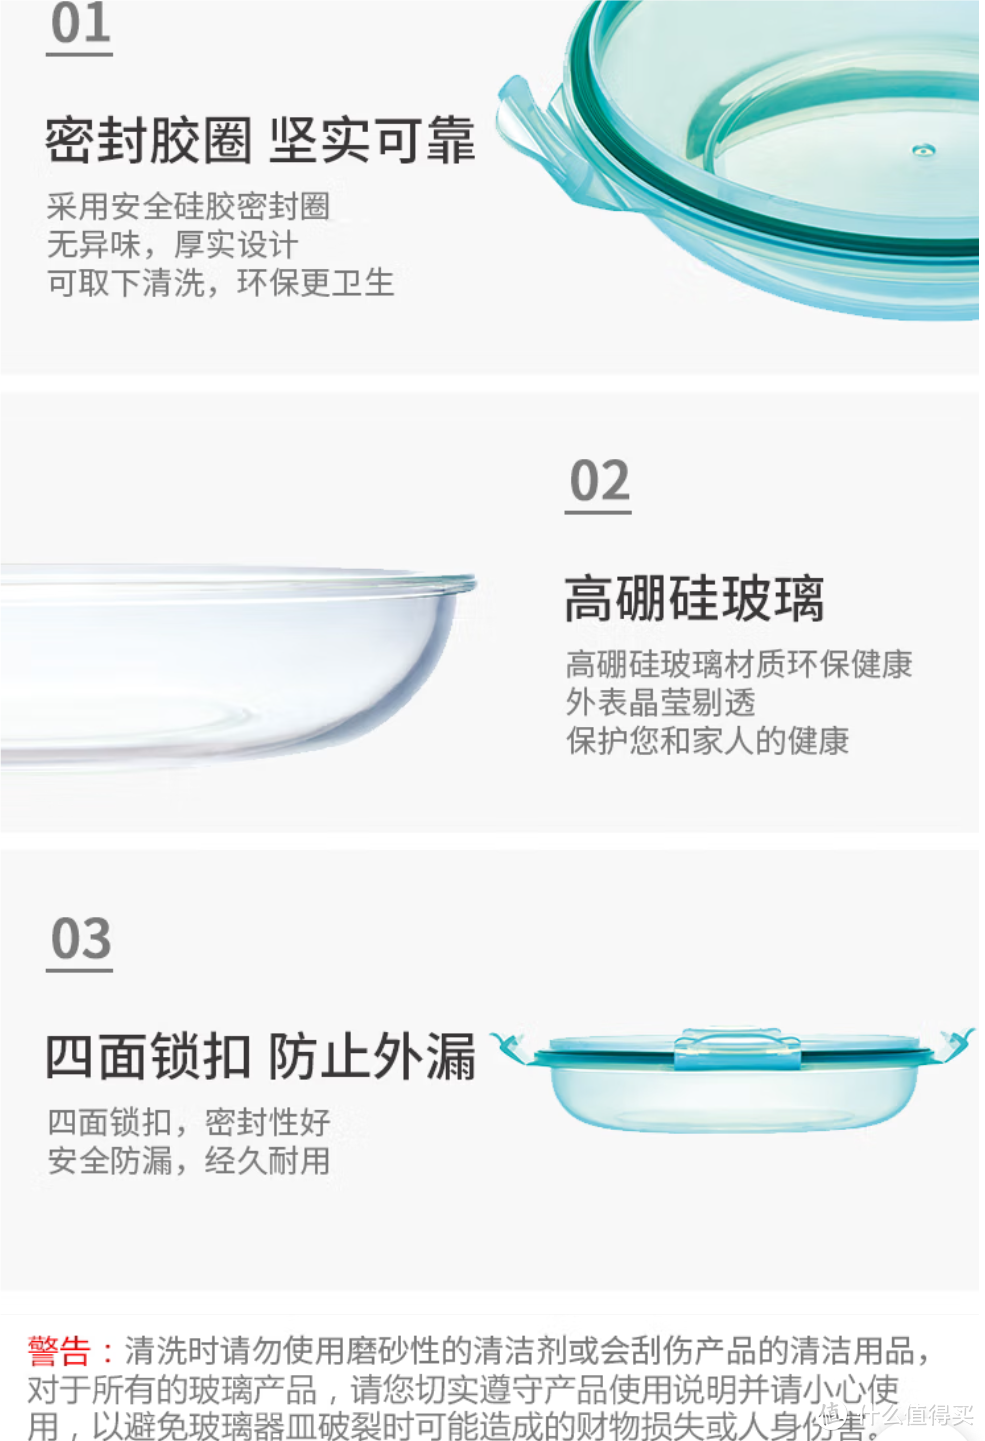 家居好物 康宁 Snapware可叠放耐热玻璃沙拉碗三件组SN-STBR3/CN